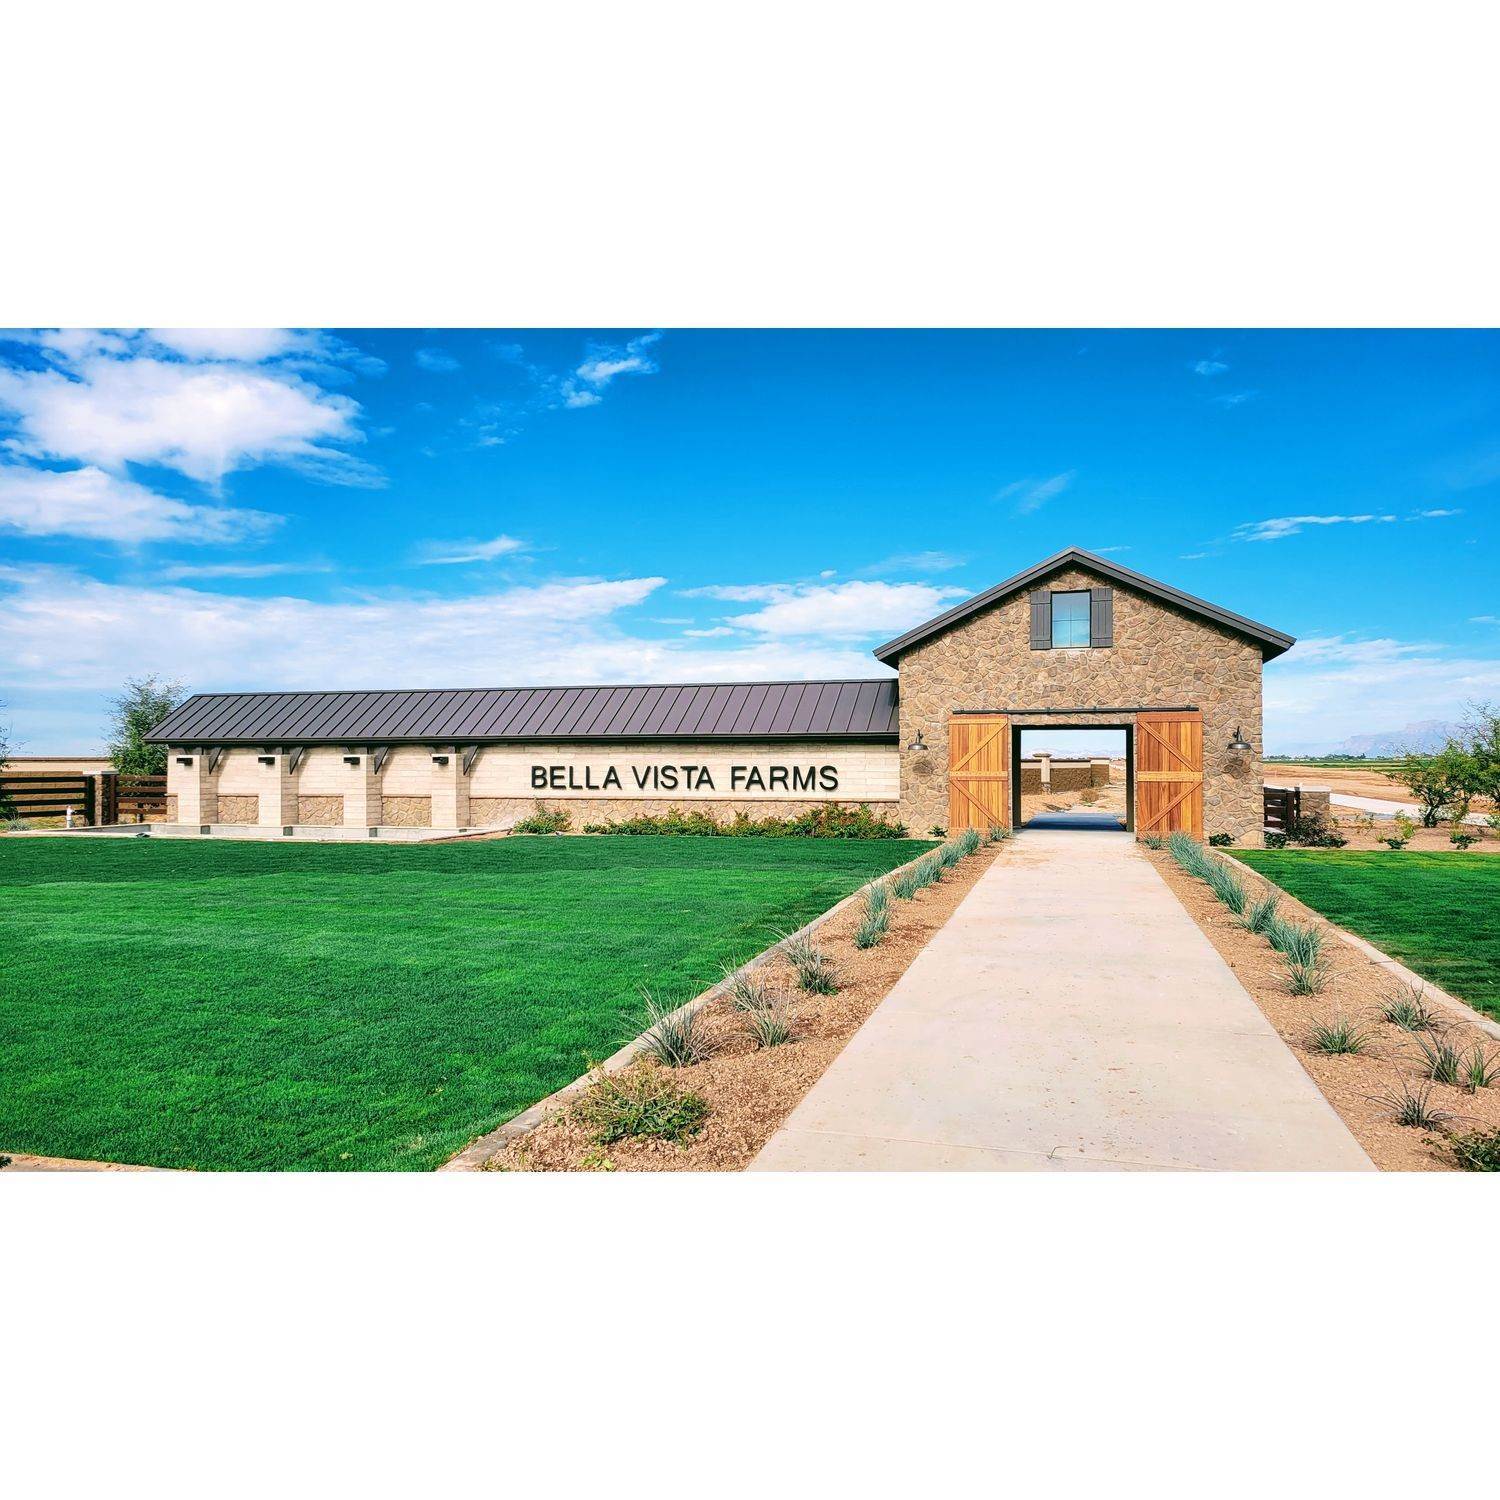 Bella Vista Farms建於 6061 South Oxley, Mesa, AZ 85212